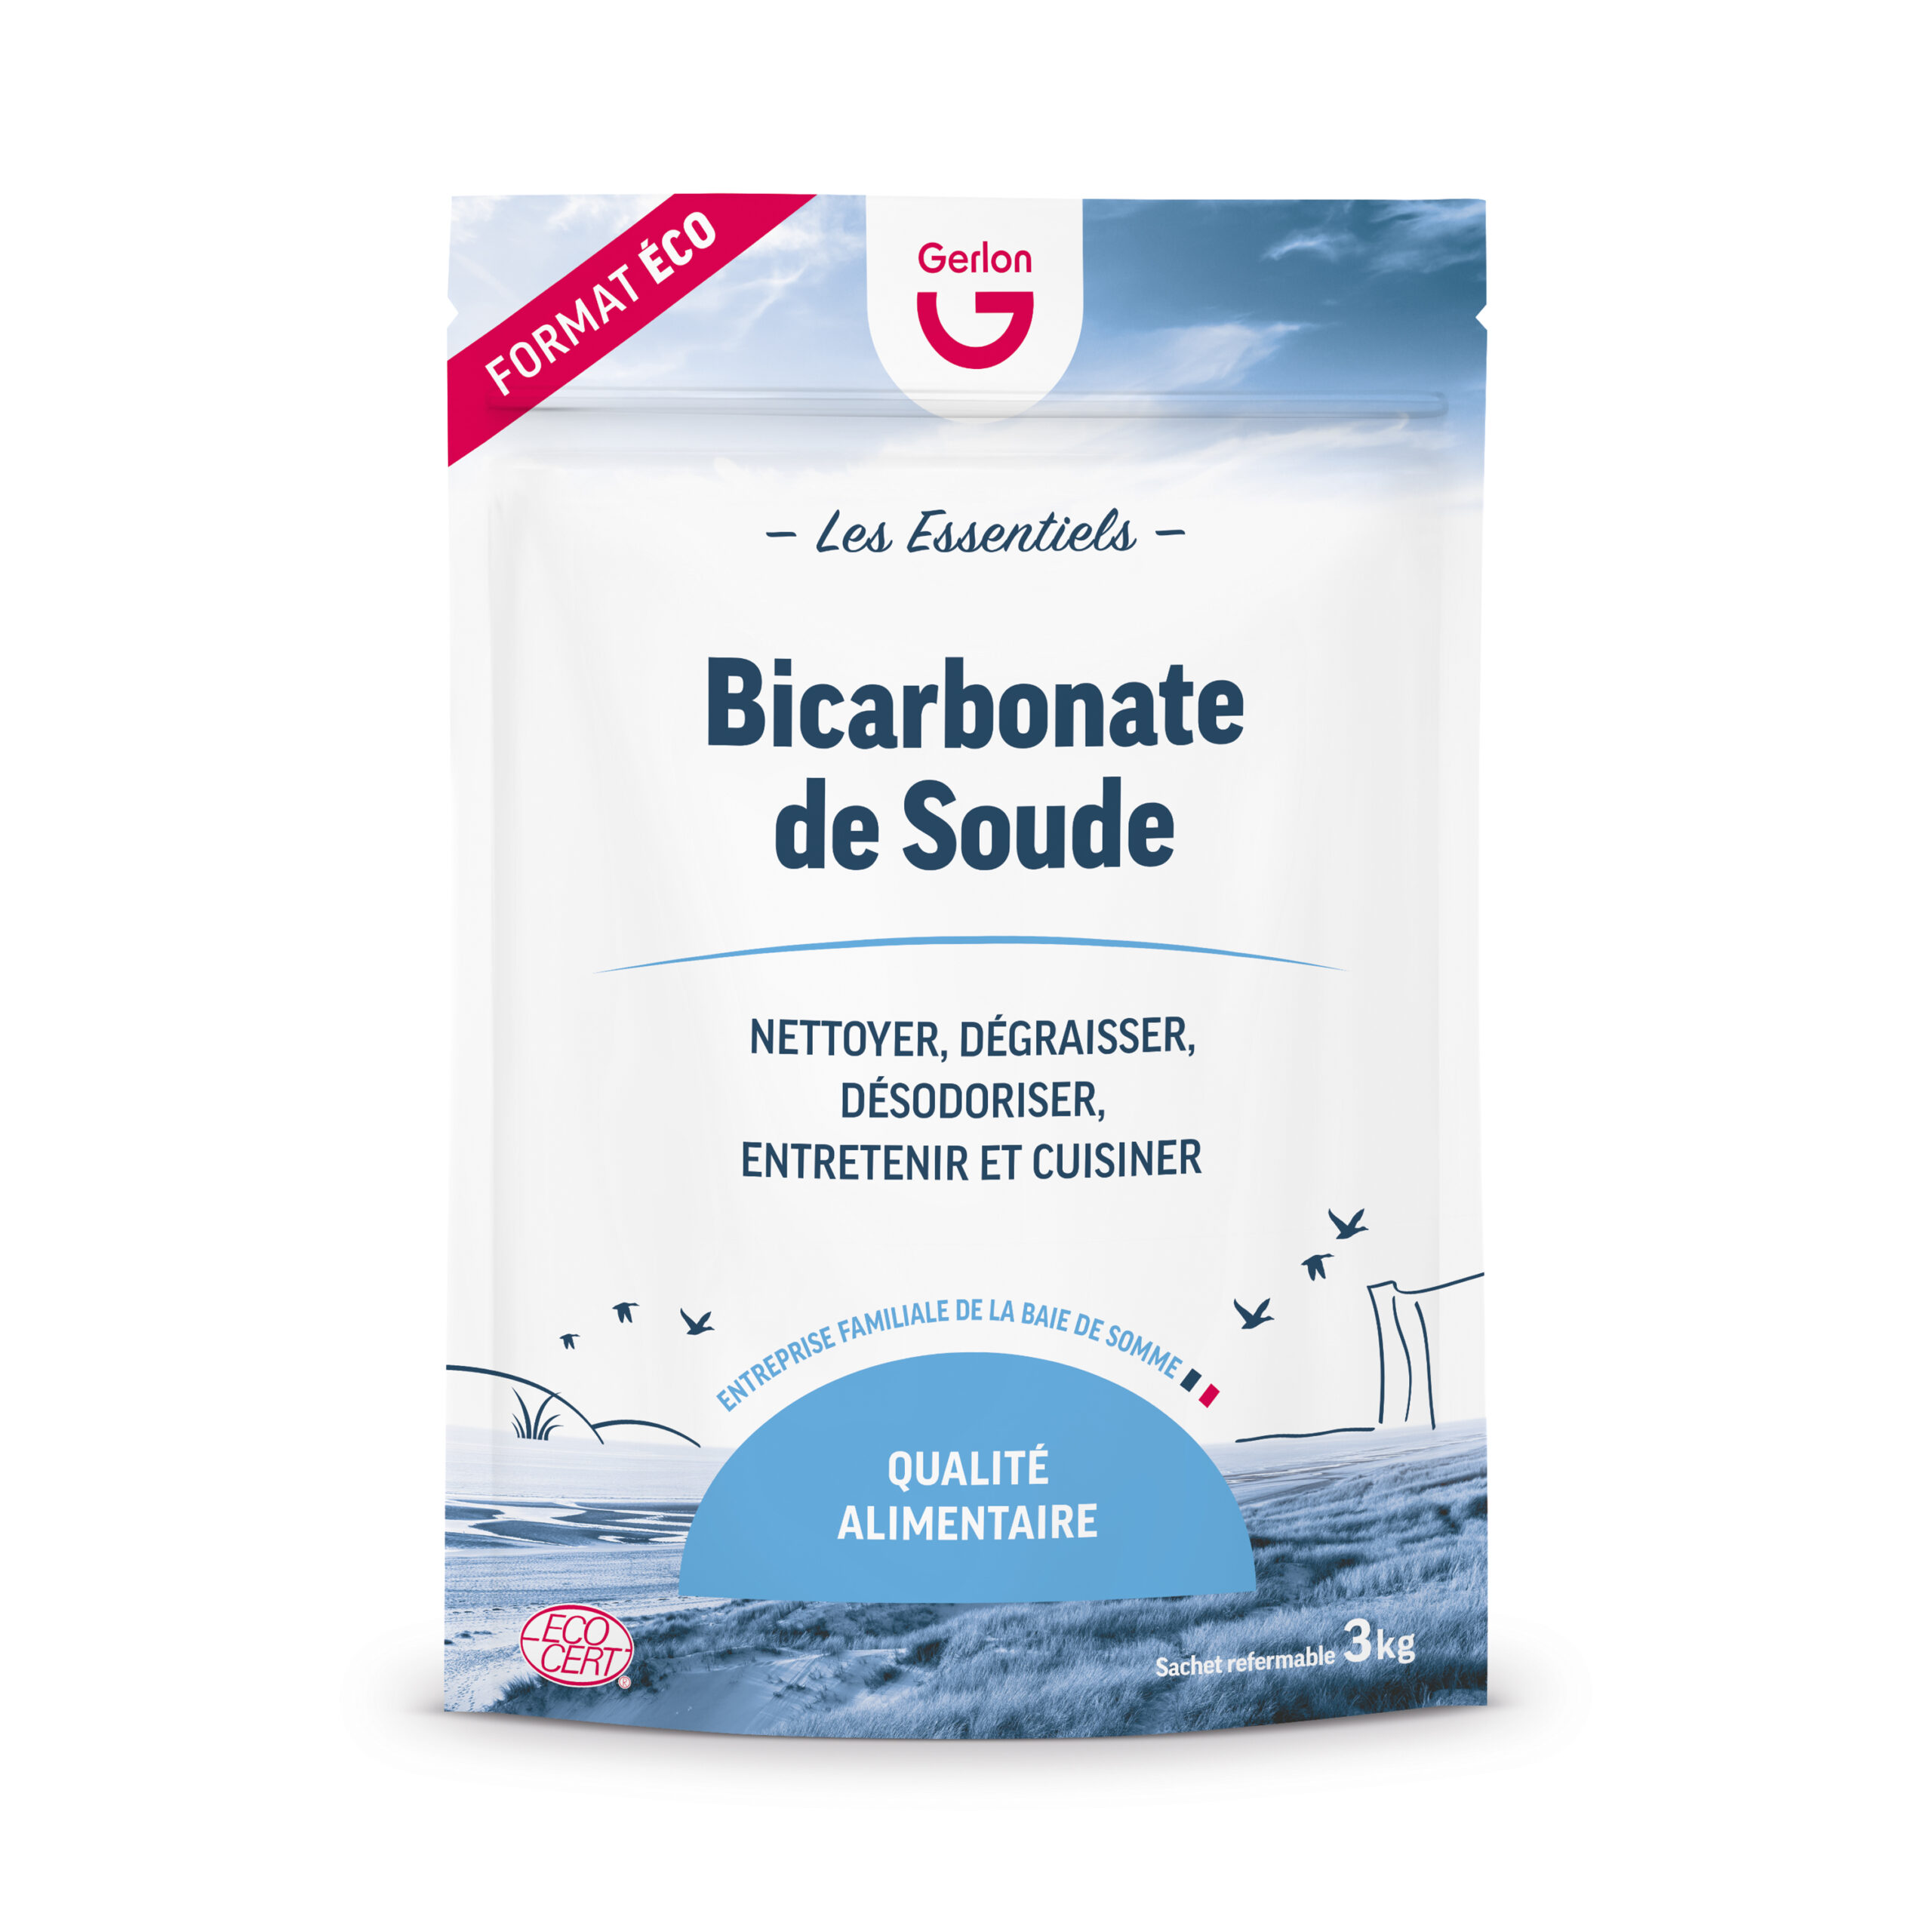 Bicarbonate de soude sachet de 1 kg multi usages entretien